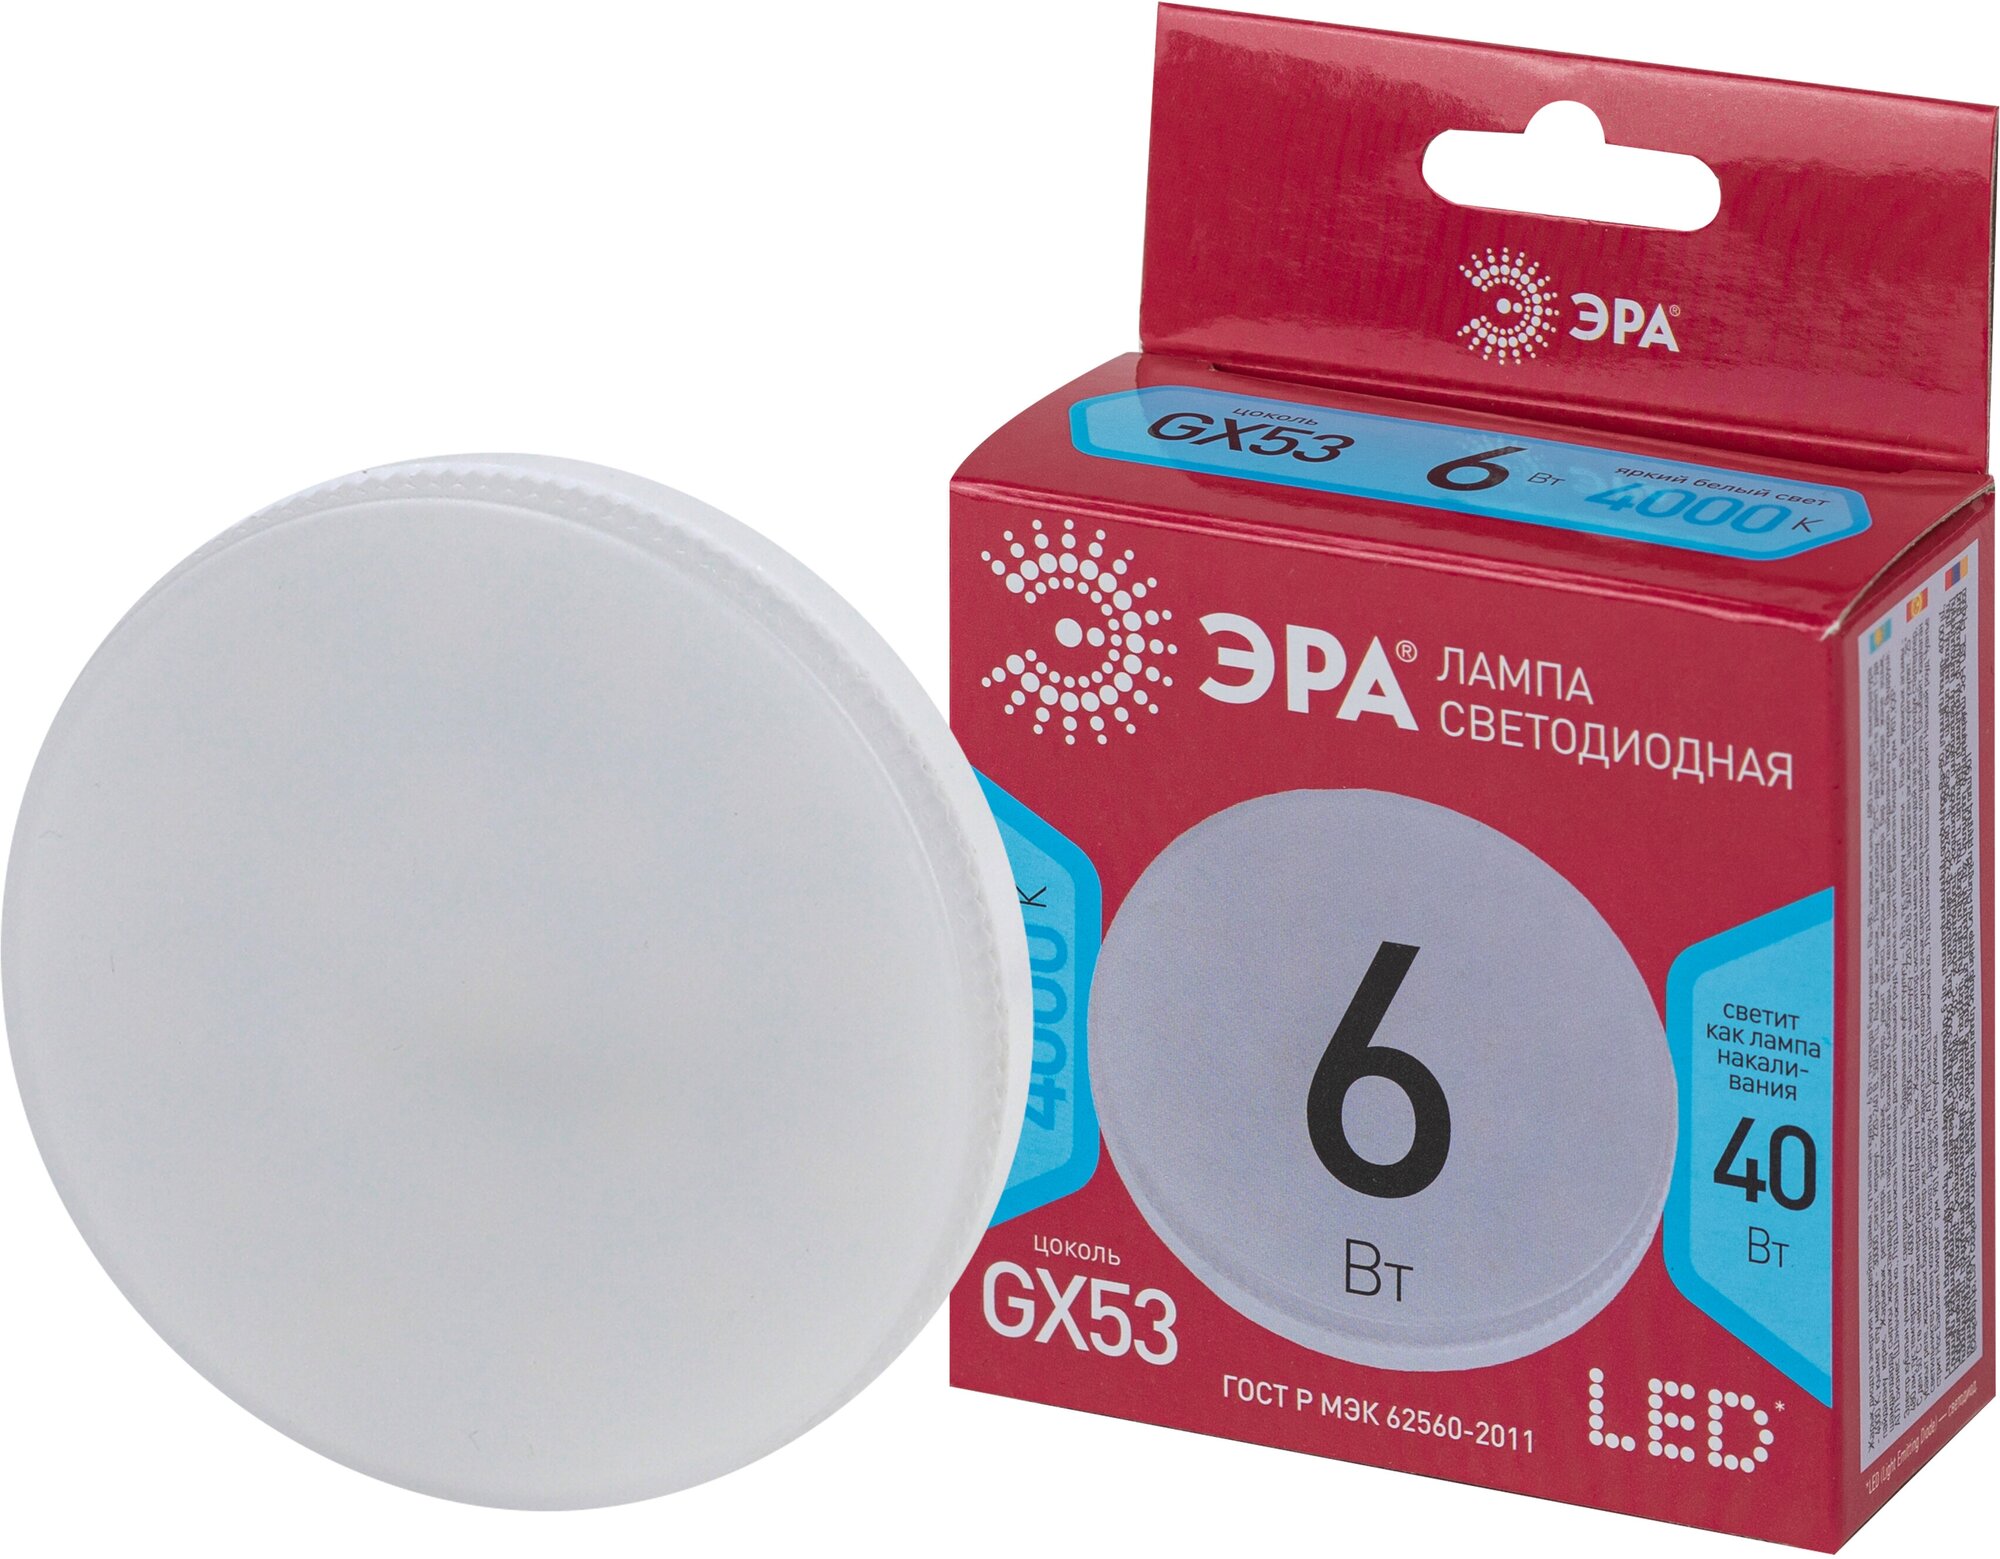 Лампочка светодиодная ЭРА RED LINE LED GX-6W-840-GX53 R 6 Вт таблетка нейтральный белый свет арт. Б0054243 (1 шт.)